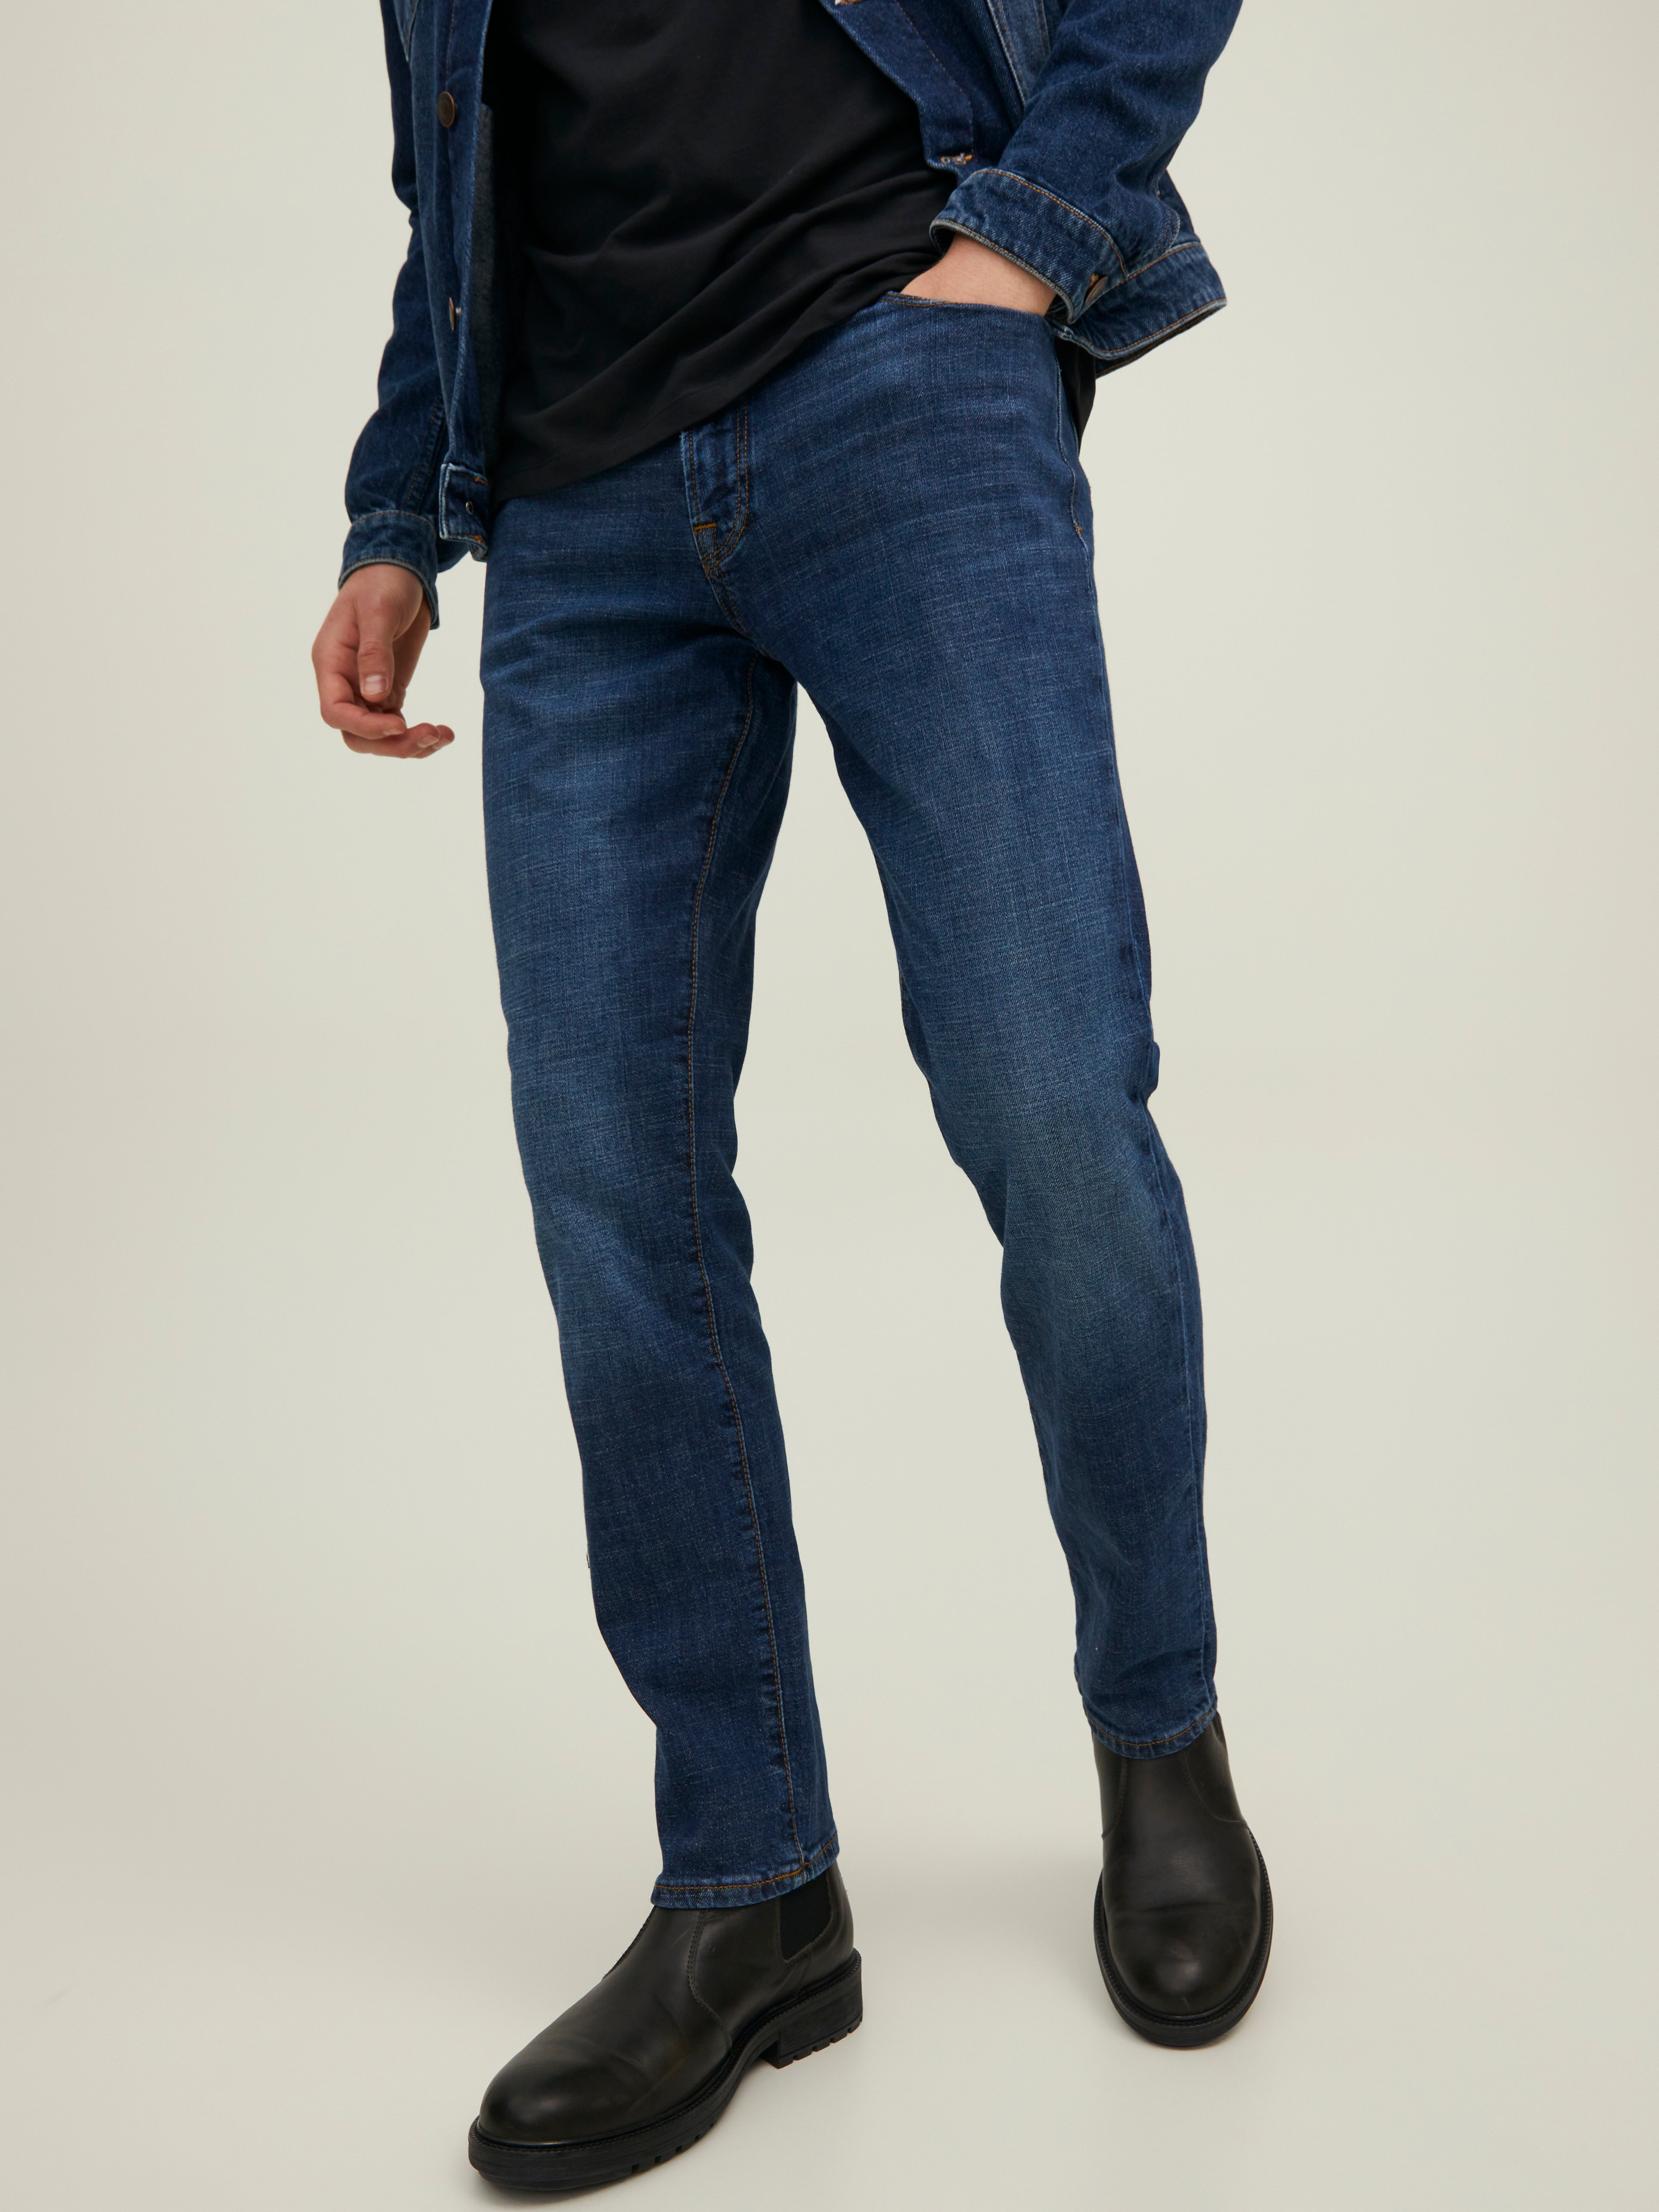 discount 57% Jack & Jones shorts jeans MEN FASHION Jeans Strech Blue XL 